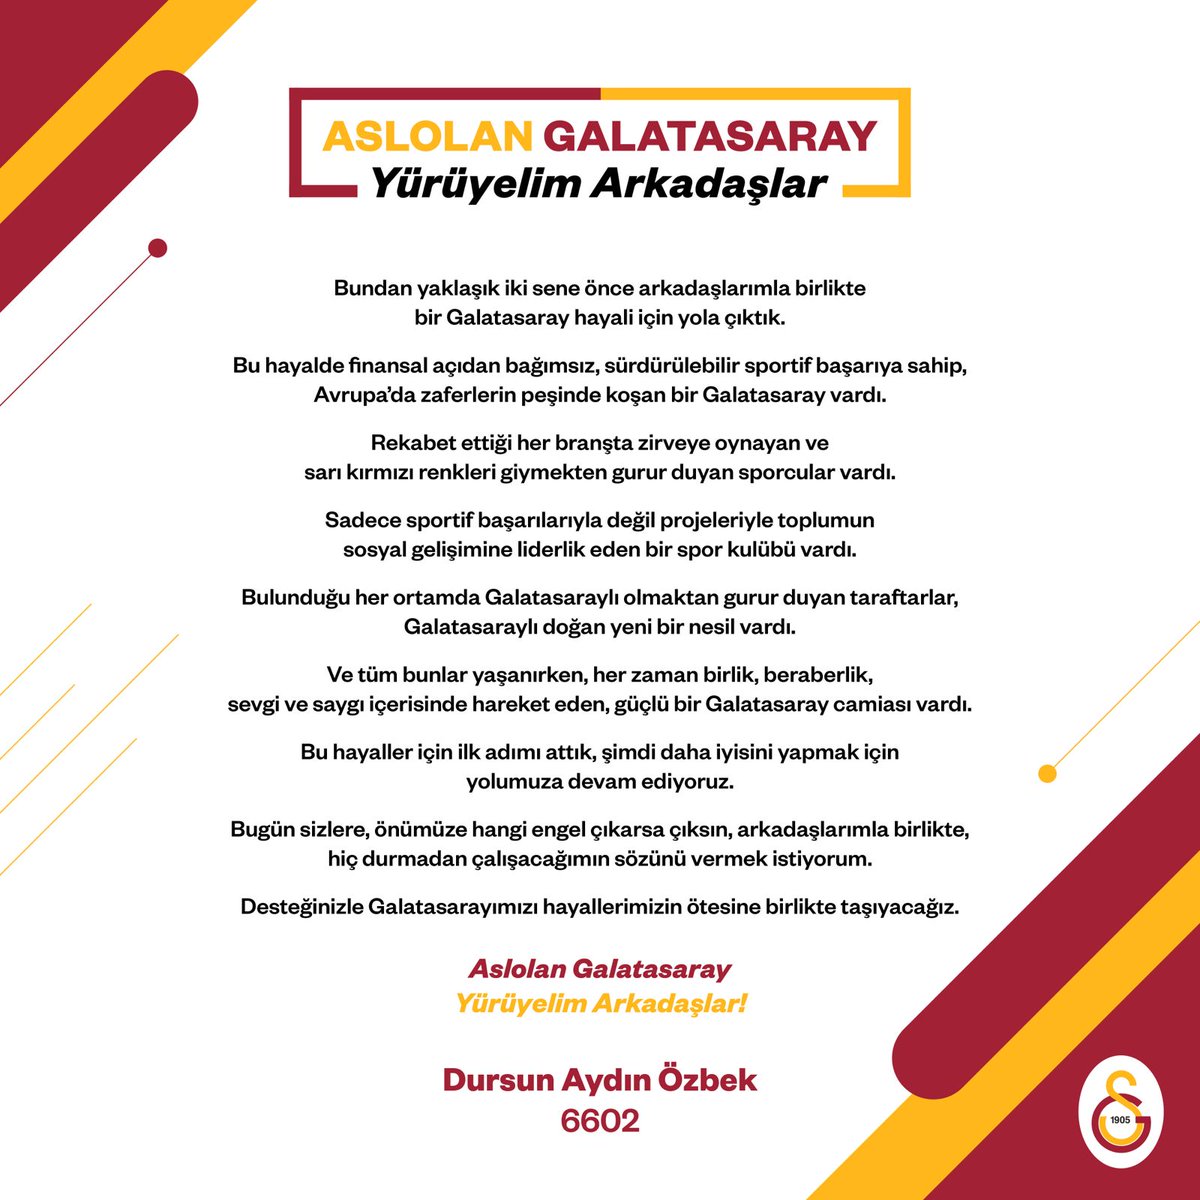 Aslolan Galatasaray Yürüyelim Arkadaşlar! #AslolanGS #YürüyelimArkadaşlar